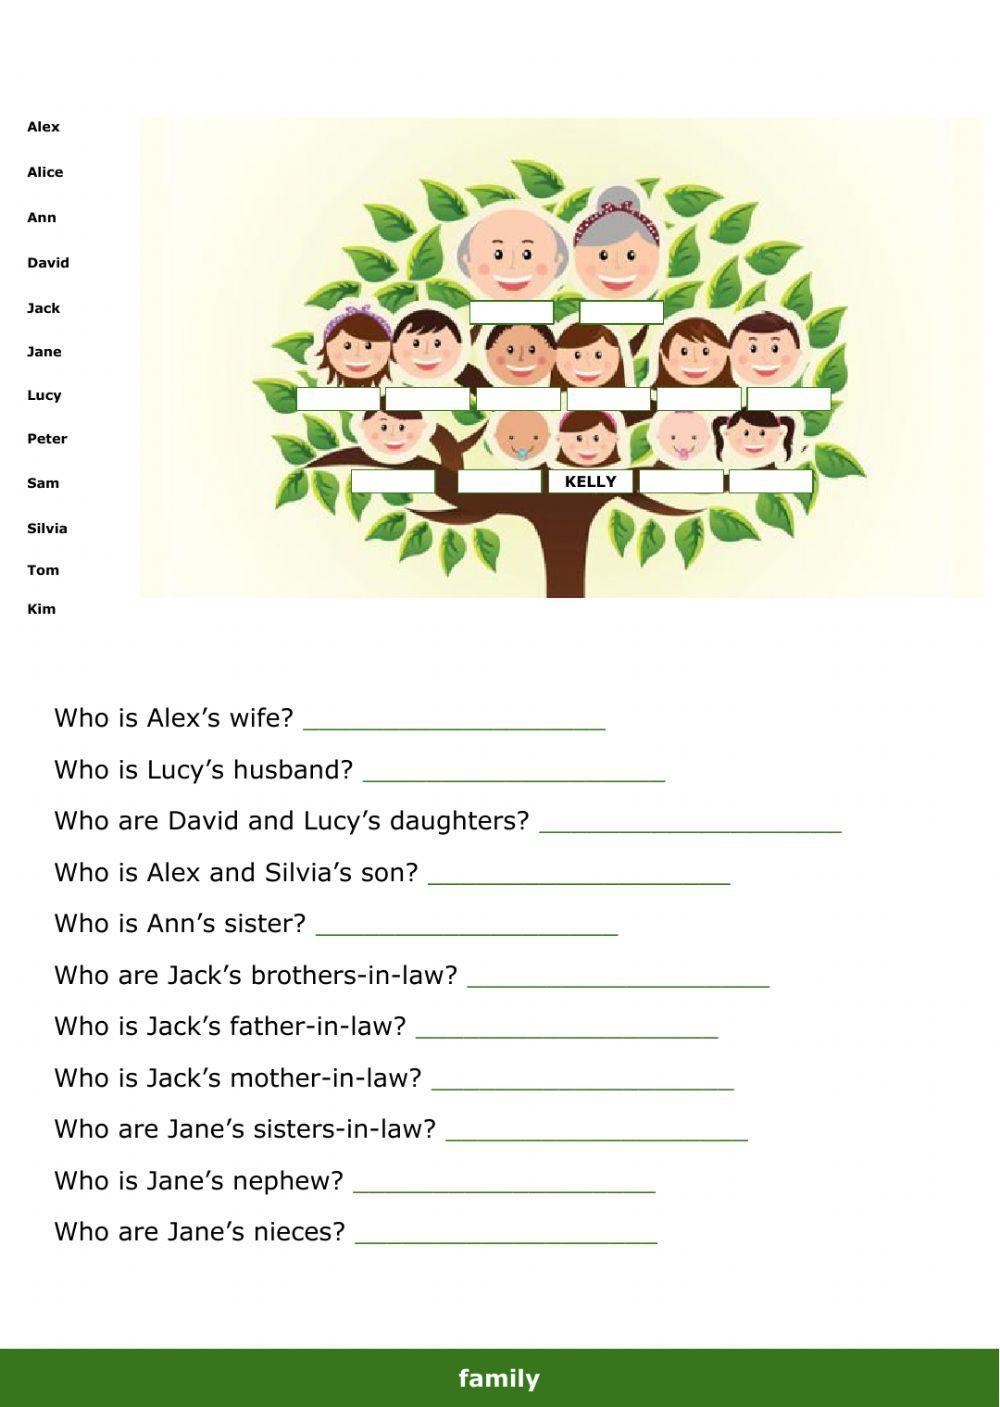 Family tree - Kelly's family